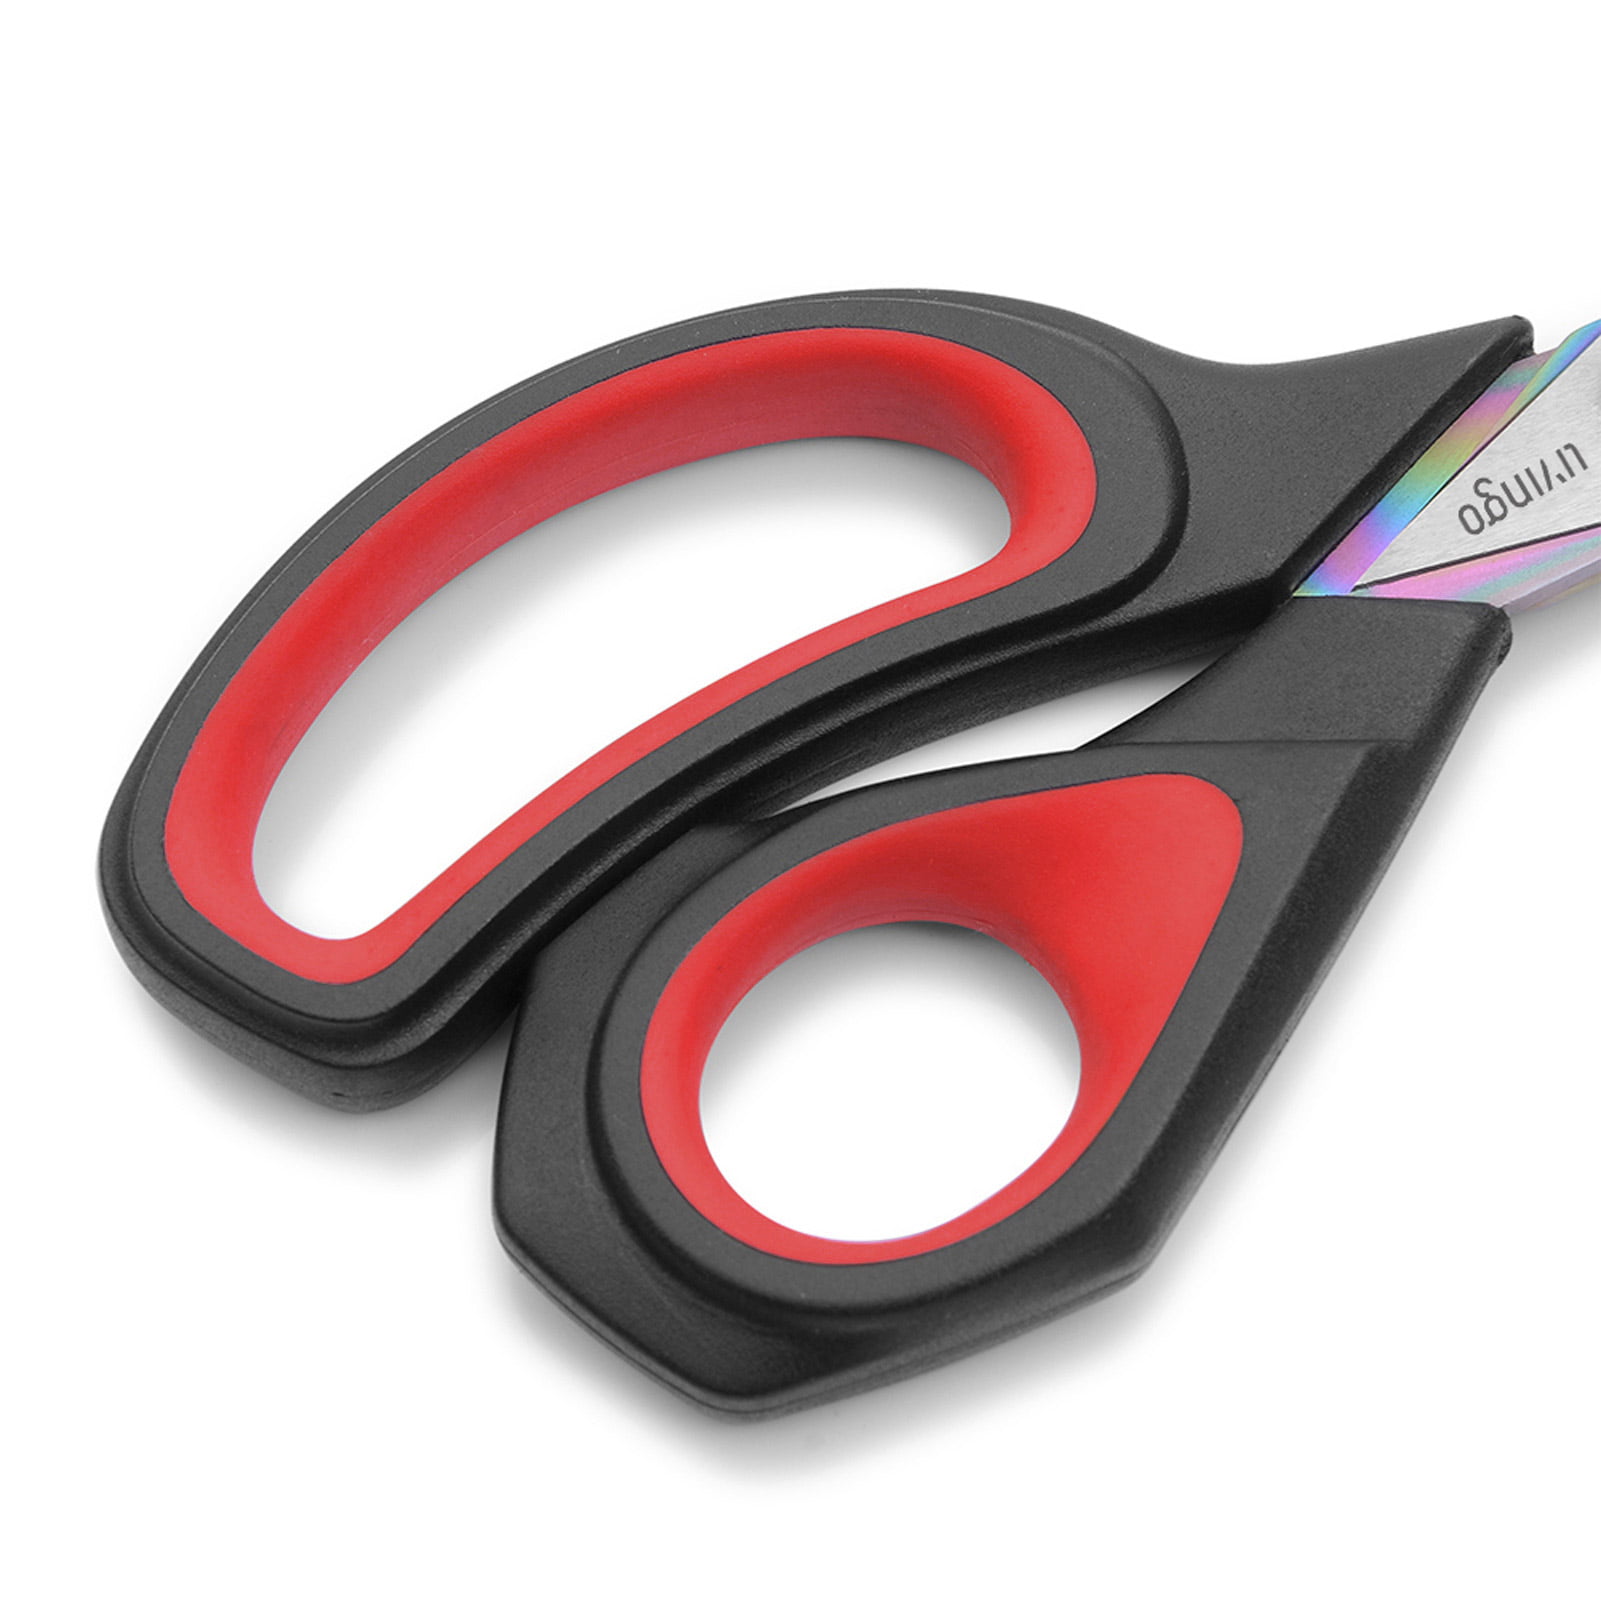 Westcott - Westcott 9.5 Premium Tailor Scissors, Red/Black (17780